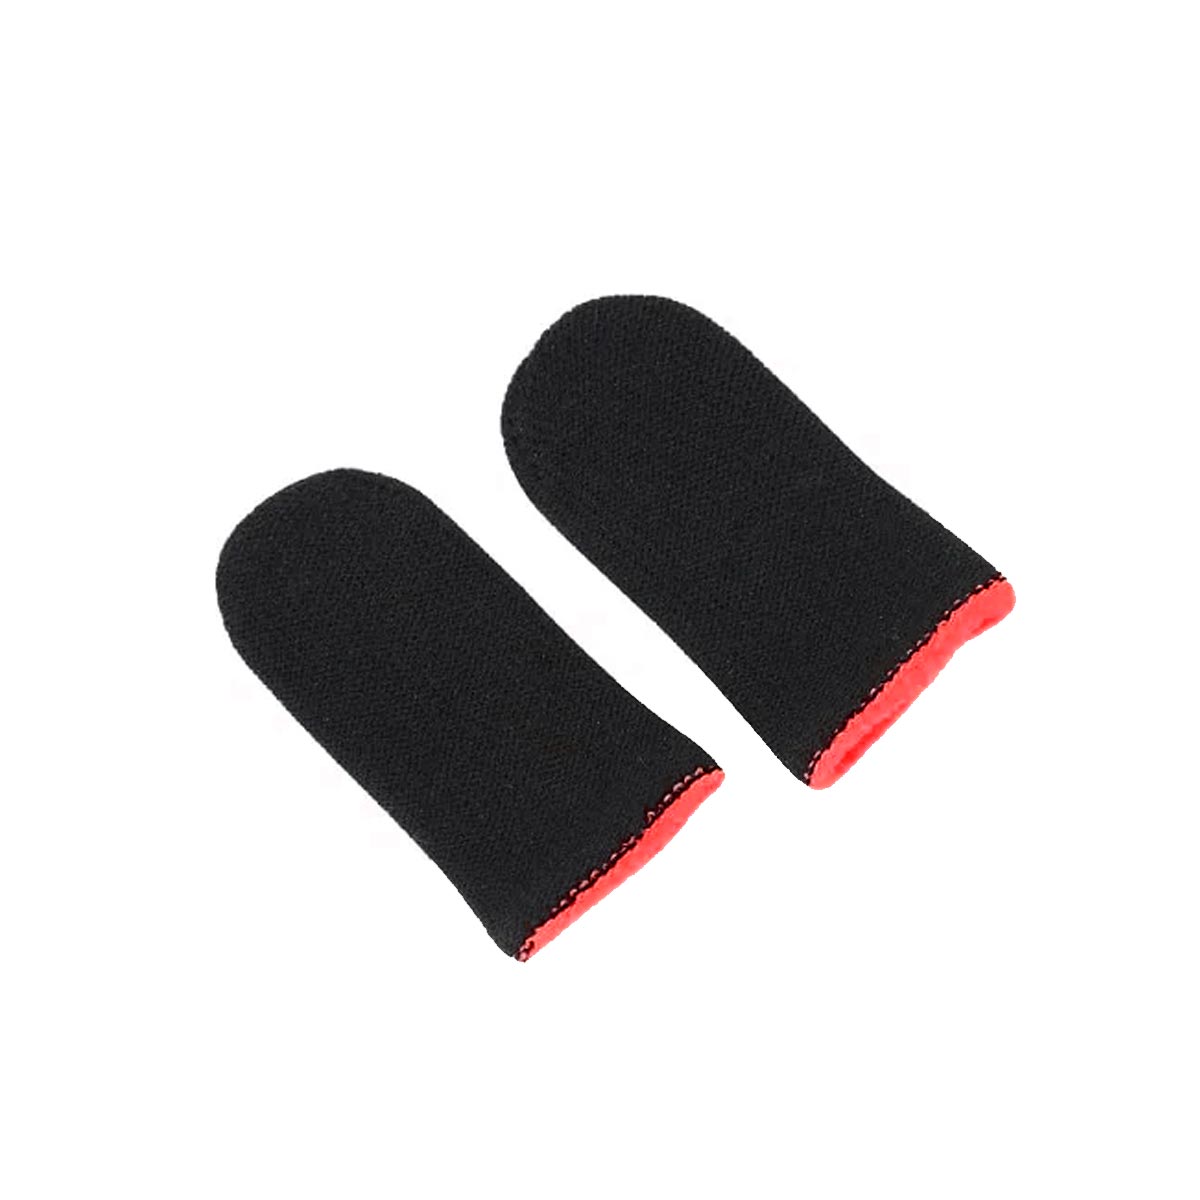 Сенсорные напальчники для игр на смартфоне (комплект 2 шт.), цвет черно красный